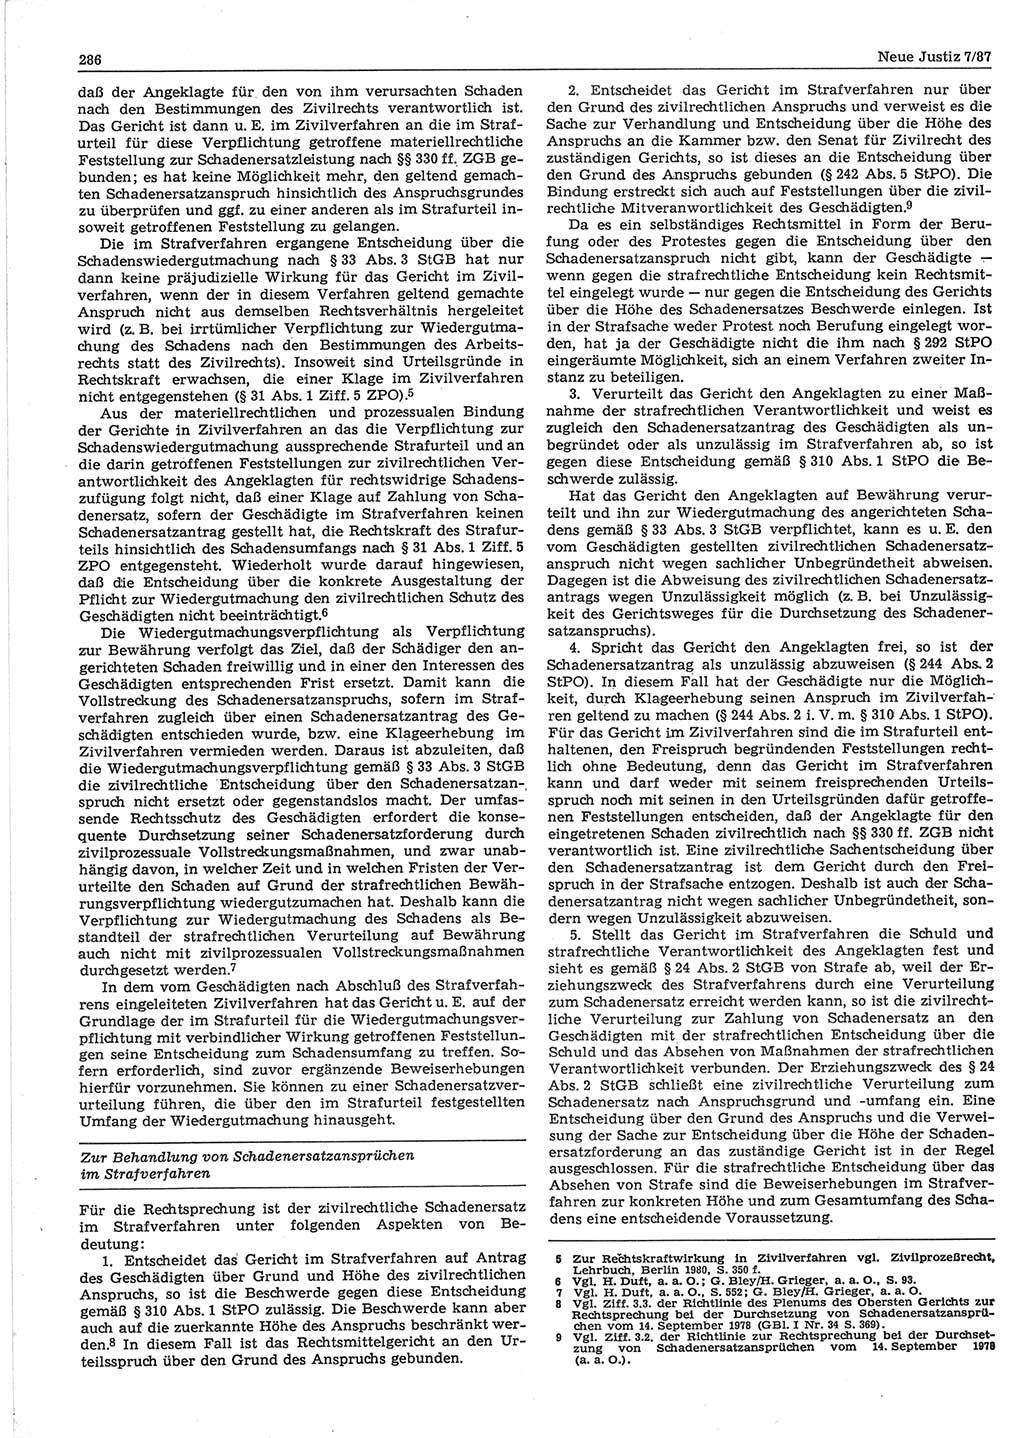 Neue Justiz (NJ), Zeitschrift für sozialistisches Recht und Gesetzlichkeit [Deutsche Demokratische Republik (DDR)], 41. Jahrgang 1987, Seite 286 (NJ DDR 1987, S. 286)